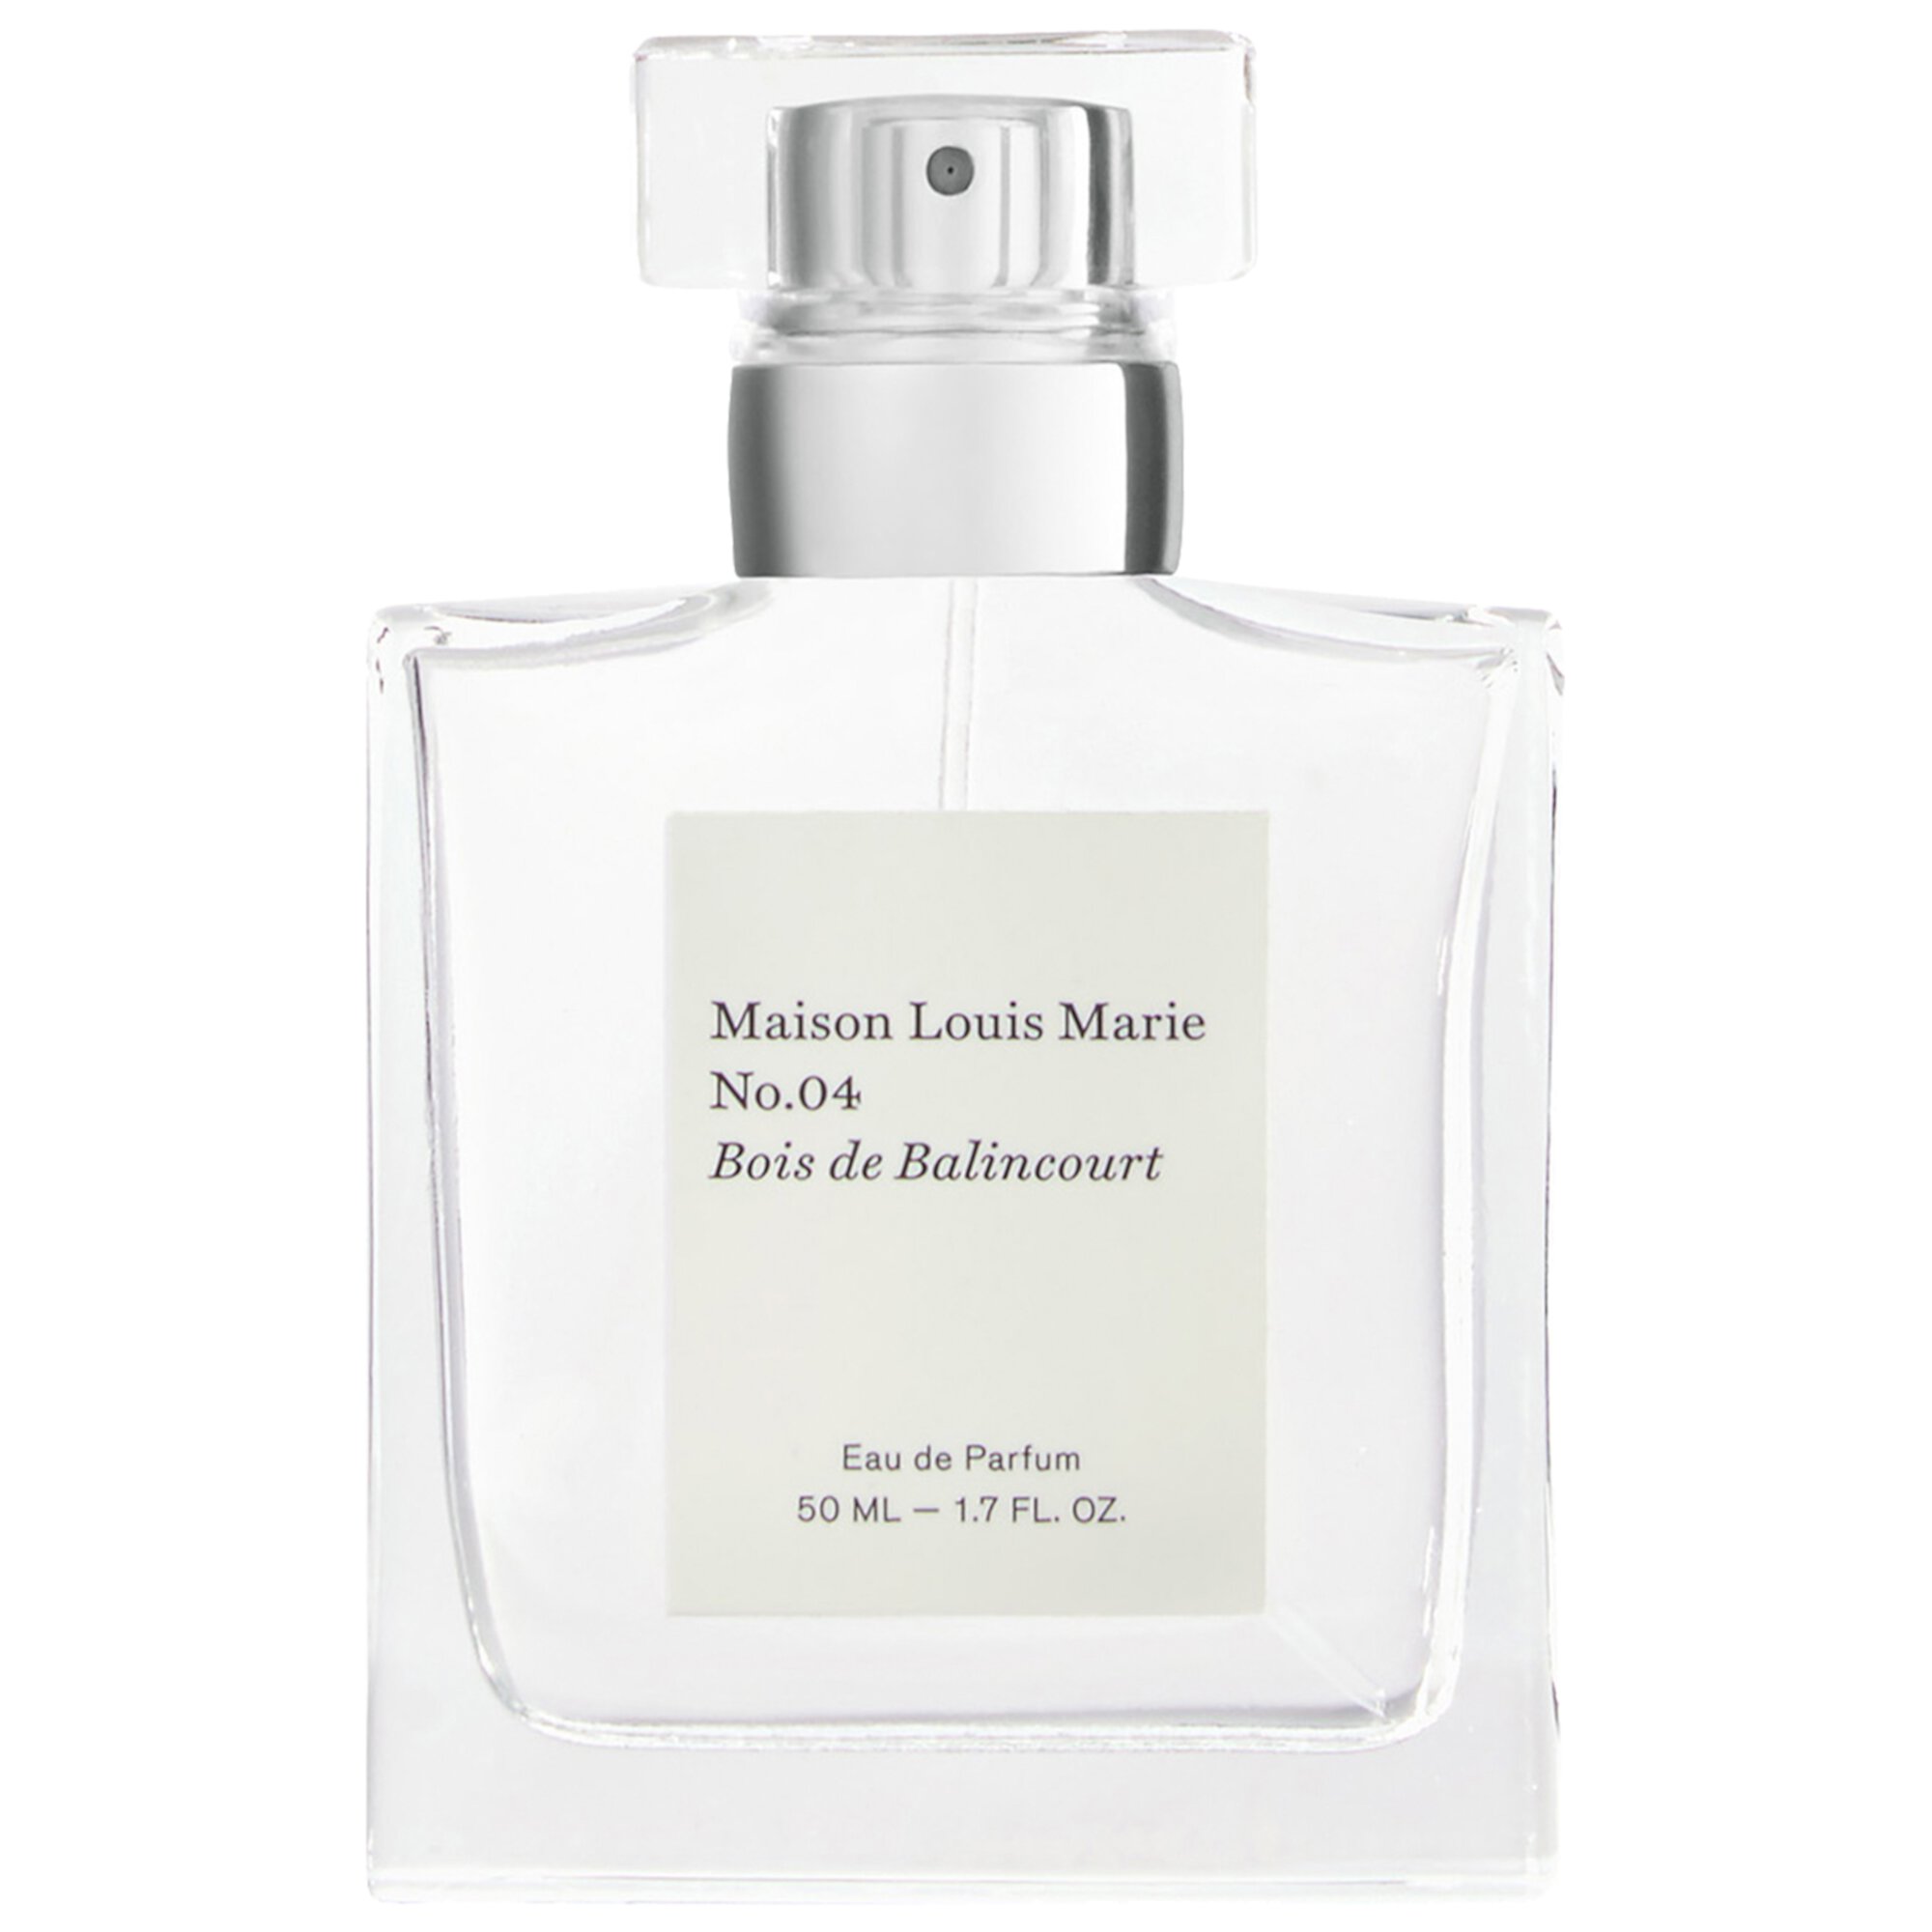 No.04 Bois de Balincourt Eau de Parfum Maison Louis Marie